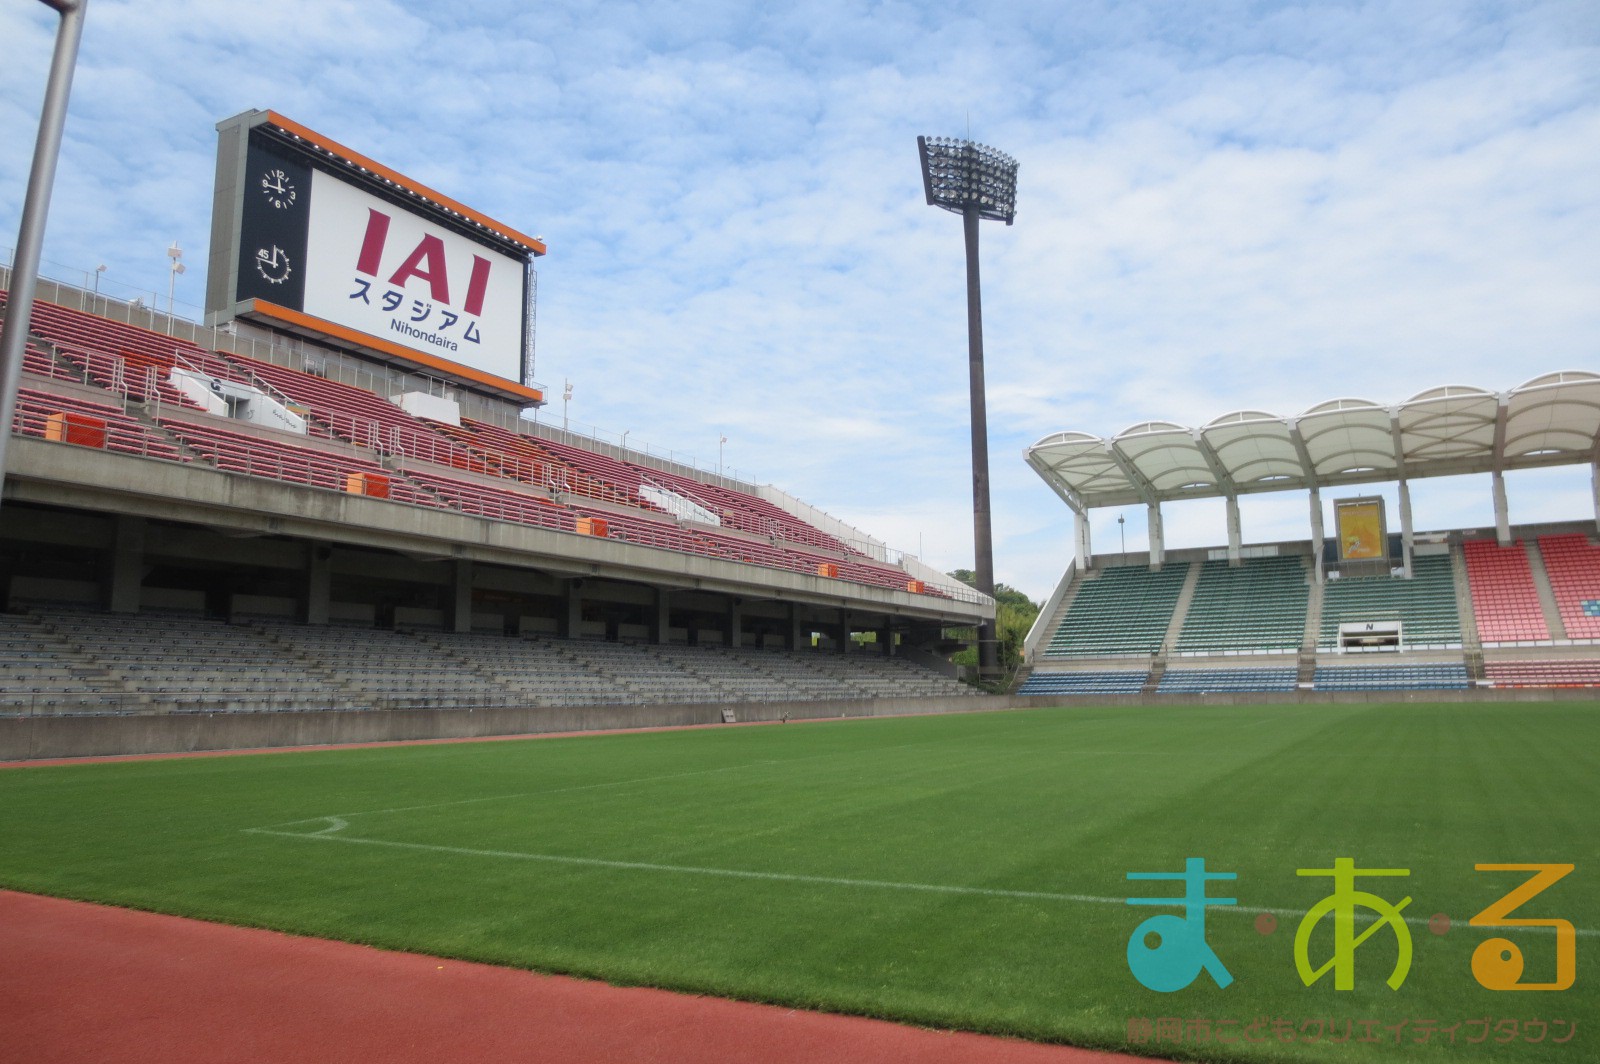 館外講座 Iaiスタジアム日本平の裏側をのぞいてみよう 静岡市こどもクリエイティブタウンま あ る 公式ホームページ